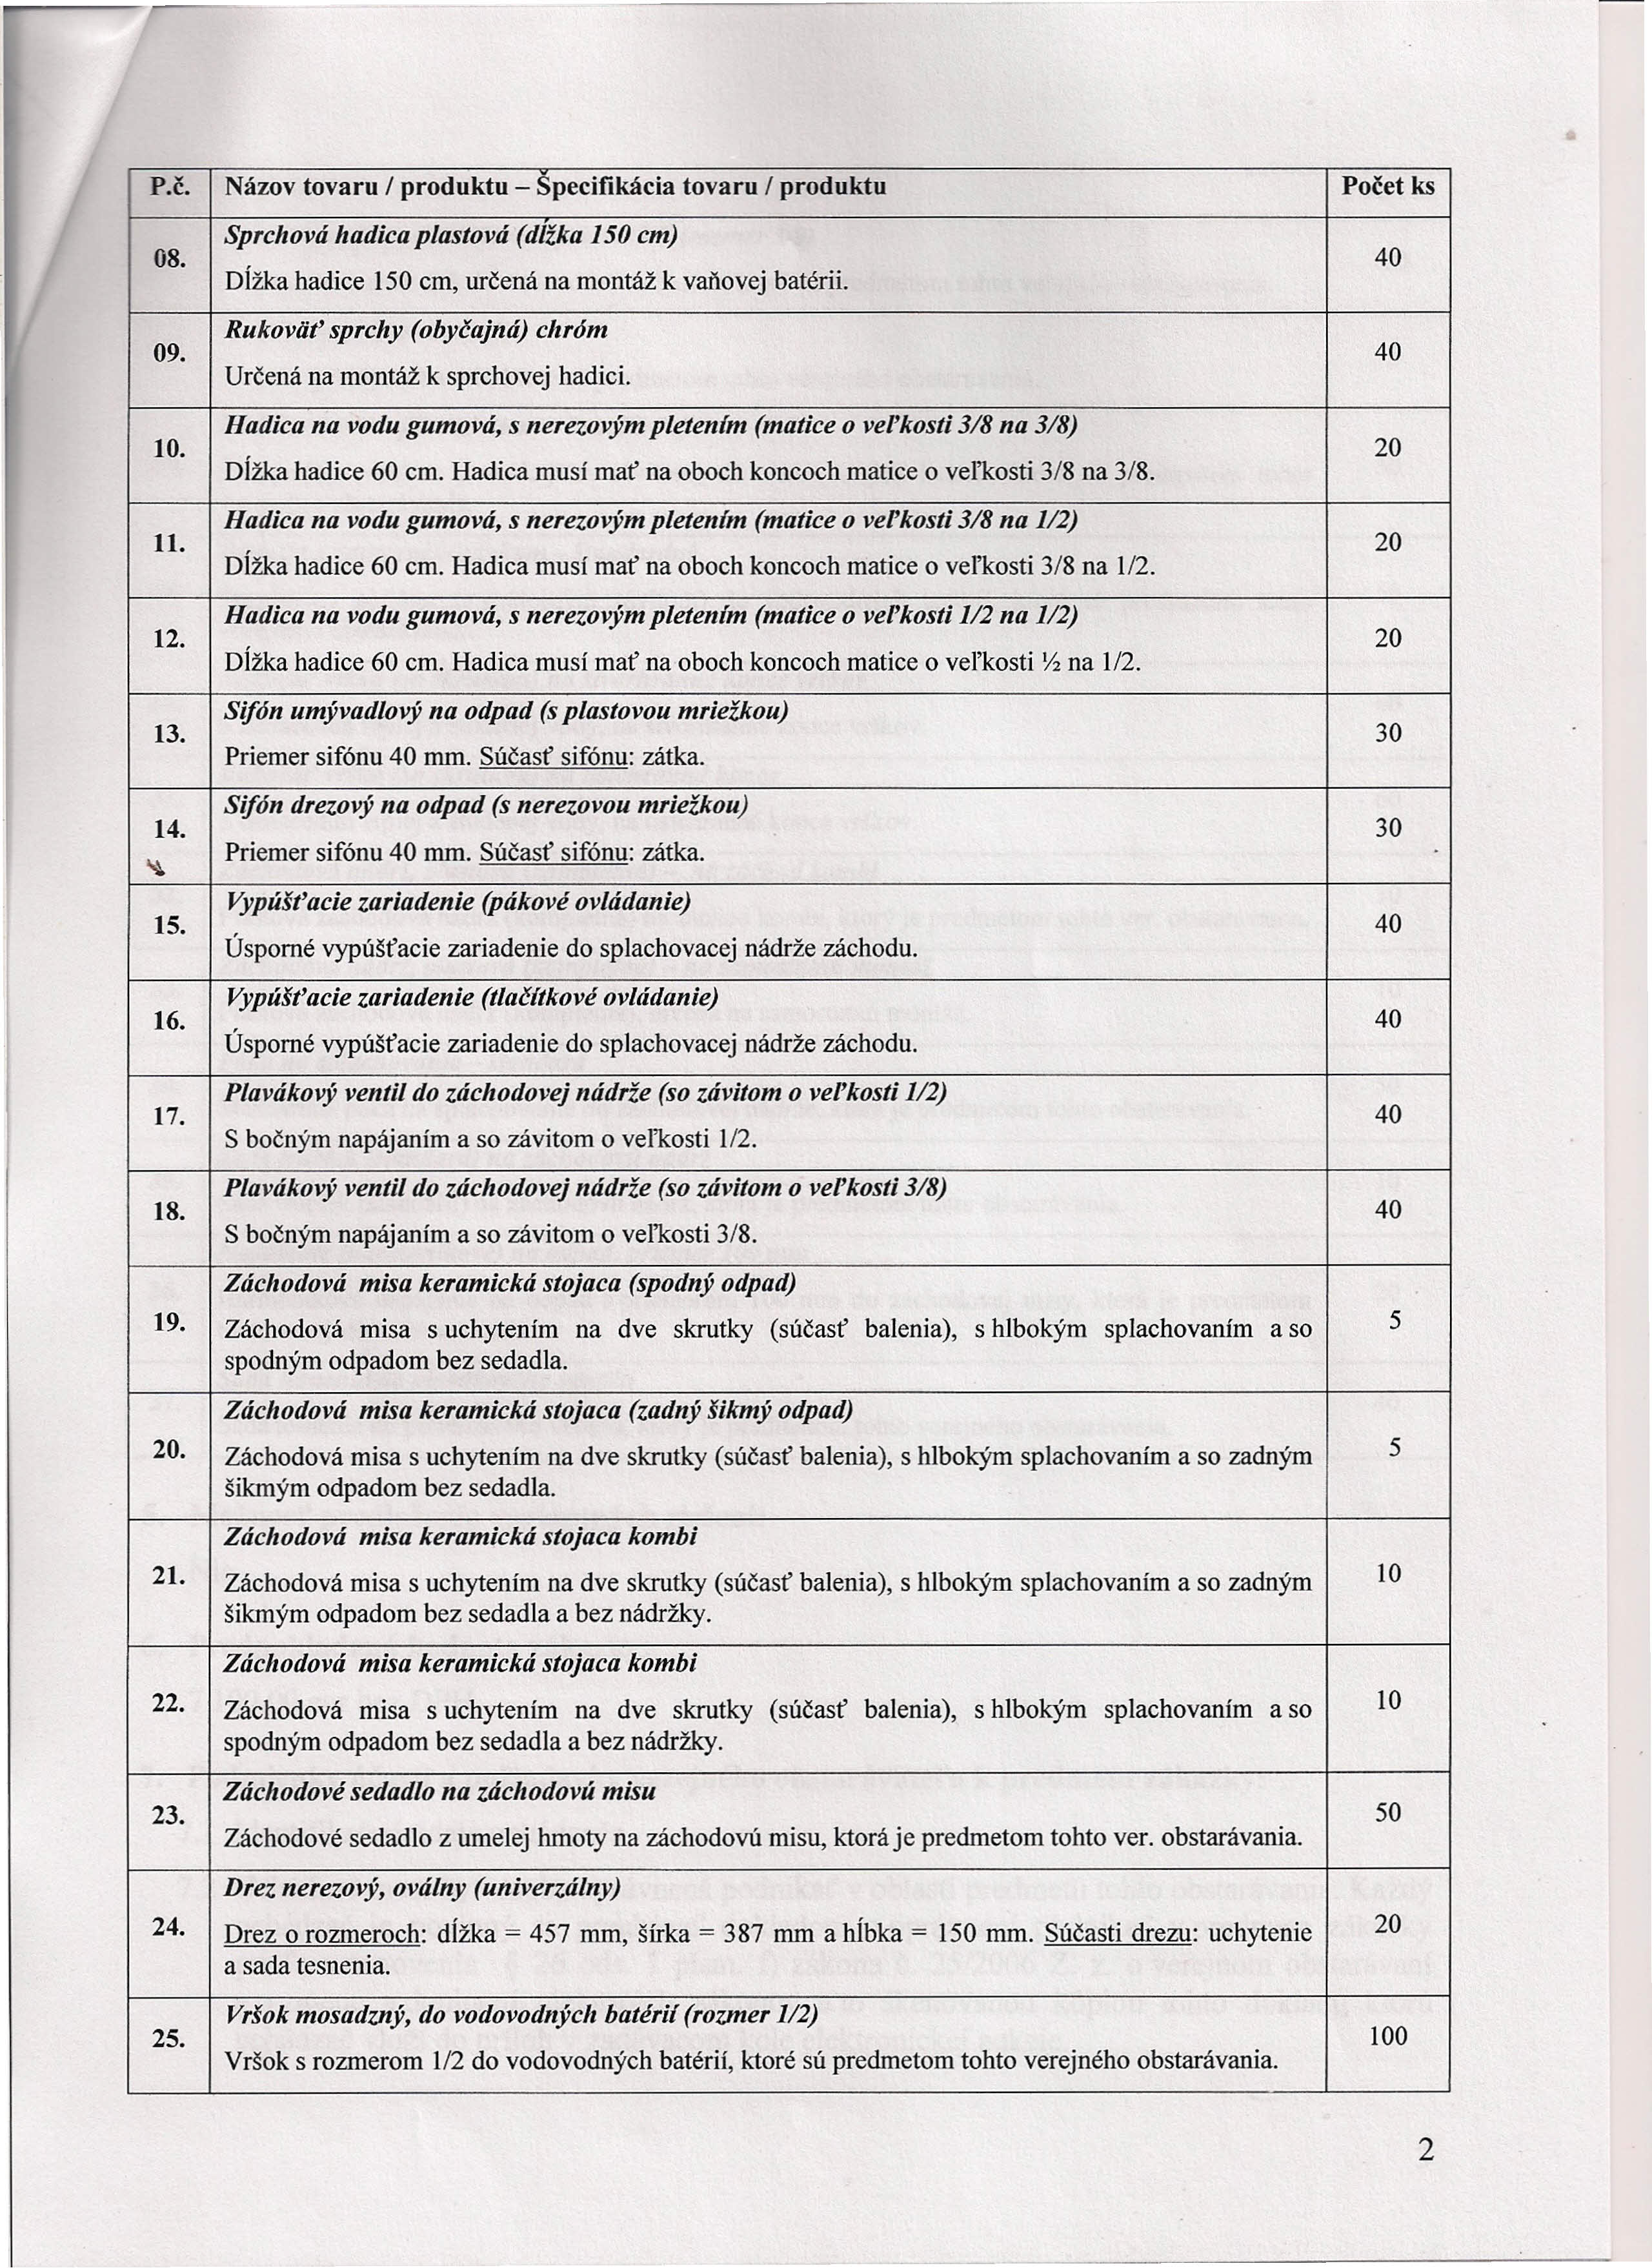 P.Č. Názov tovaru / produktu - Specifikácia tovaru / produktu Počet ks 08. 09. 10. ll. 12. 13. 14. ~ 15. 16. 17. 18.